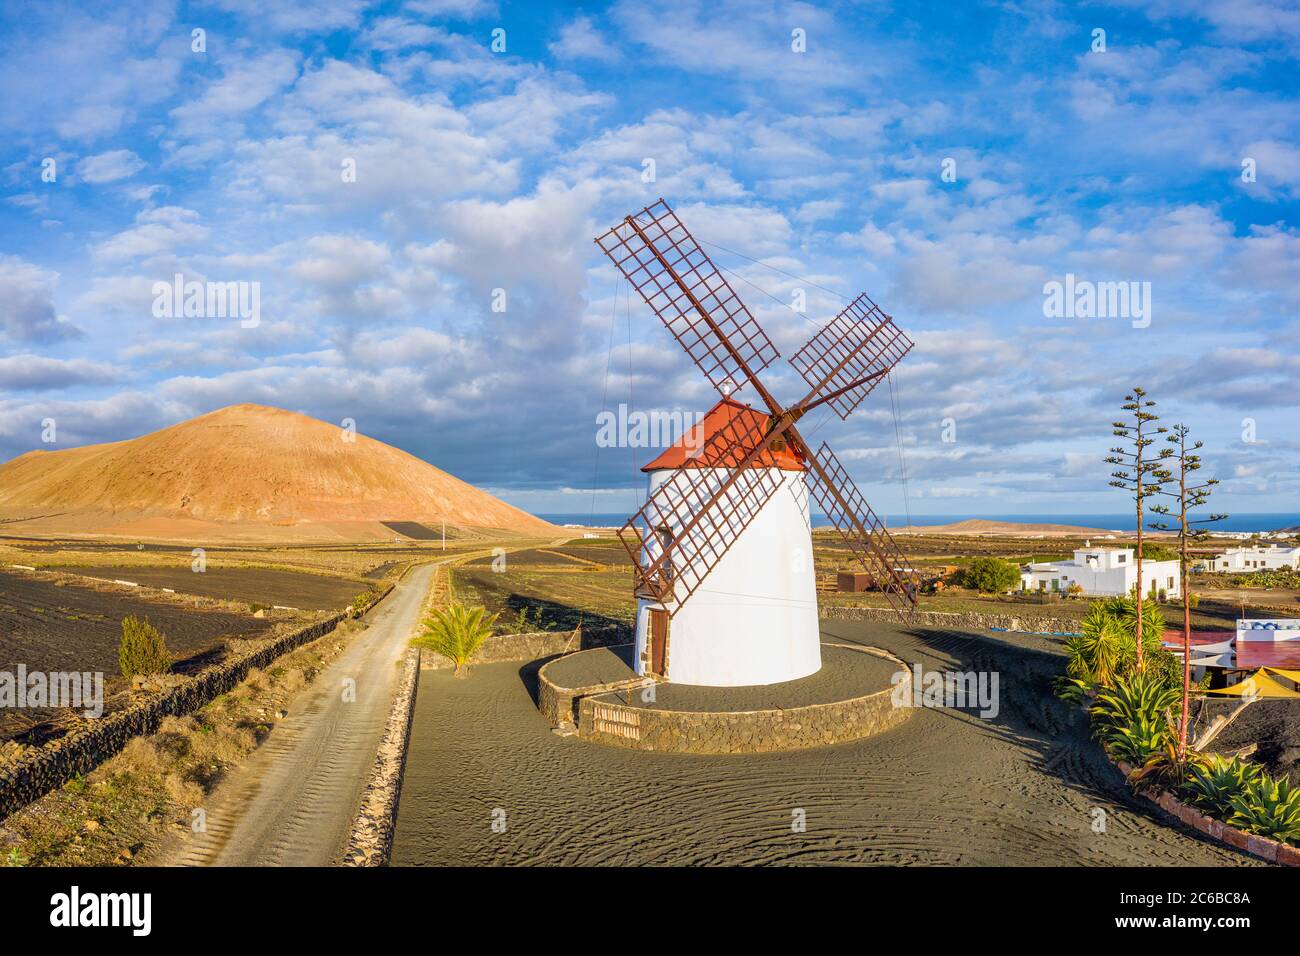 Molino de viento tradicional y paisaje volcánico, Tiagua, Lanzarote, Islas Canarias, España, Atlántico, Europa Foto de stock